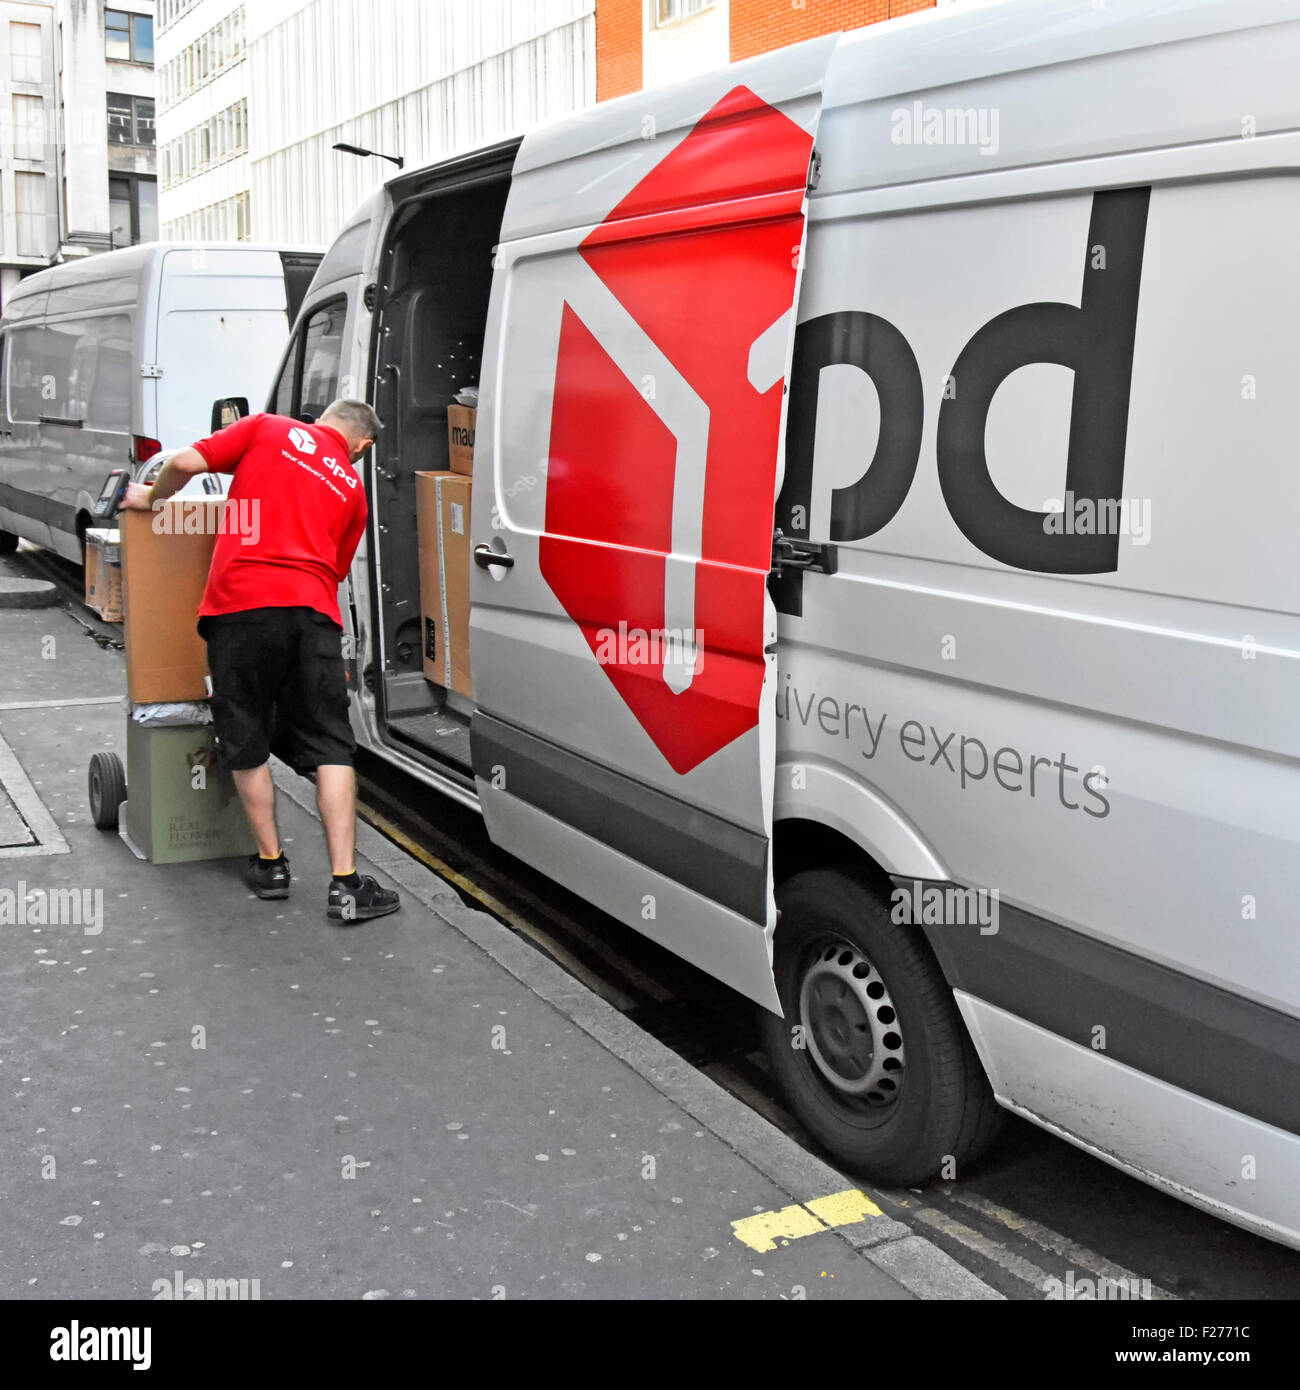 Fahrer eines Lieferwagens, der Pakete vom DPD Supply Chain Service auf den Wagen lädt und Pakete an ein Unternehmen in London, England, UK liefert Stockfoto